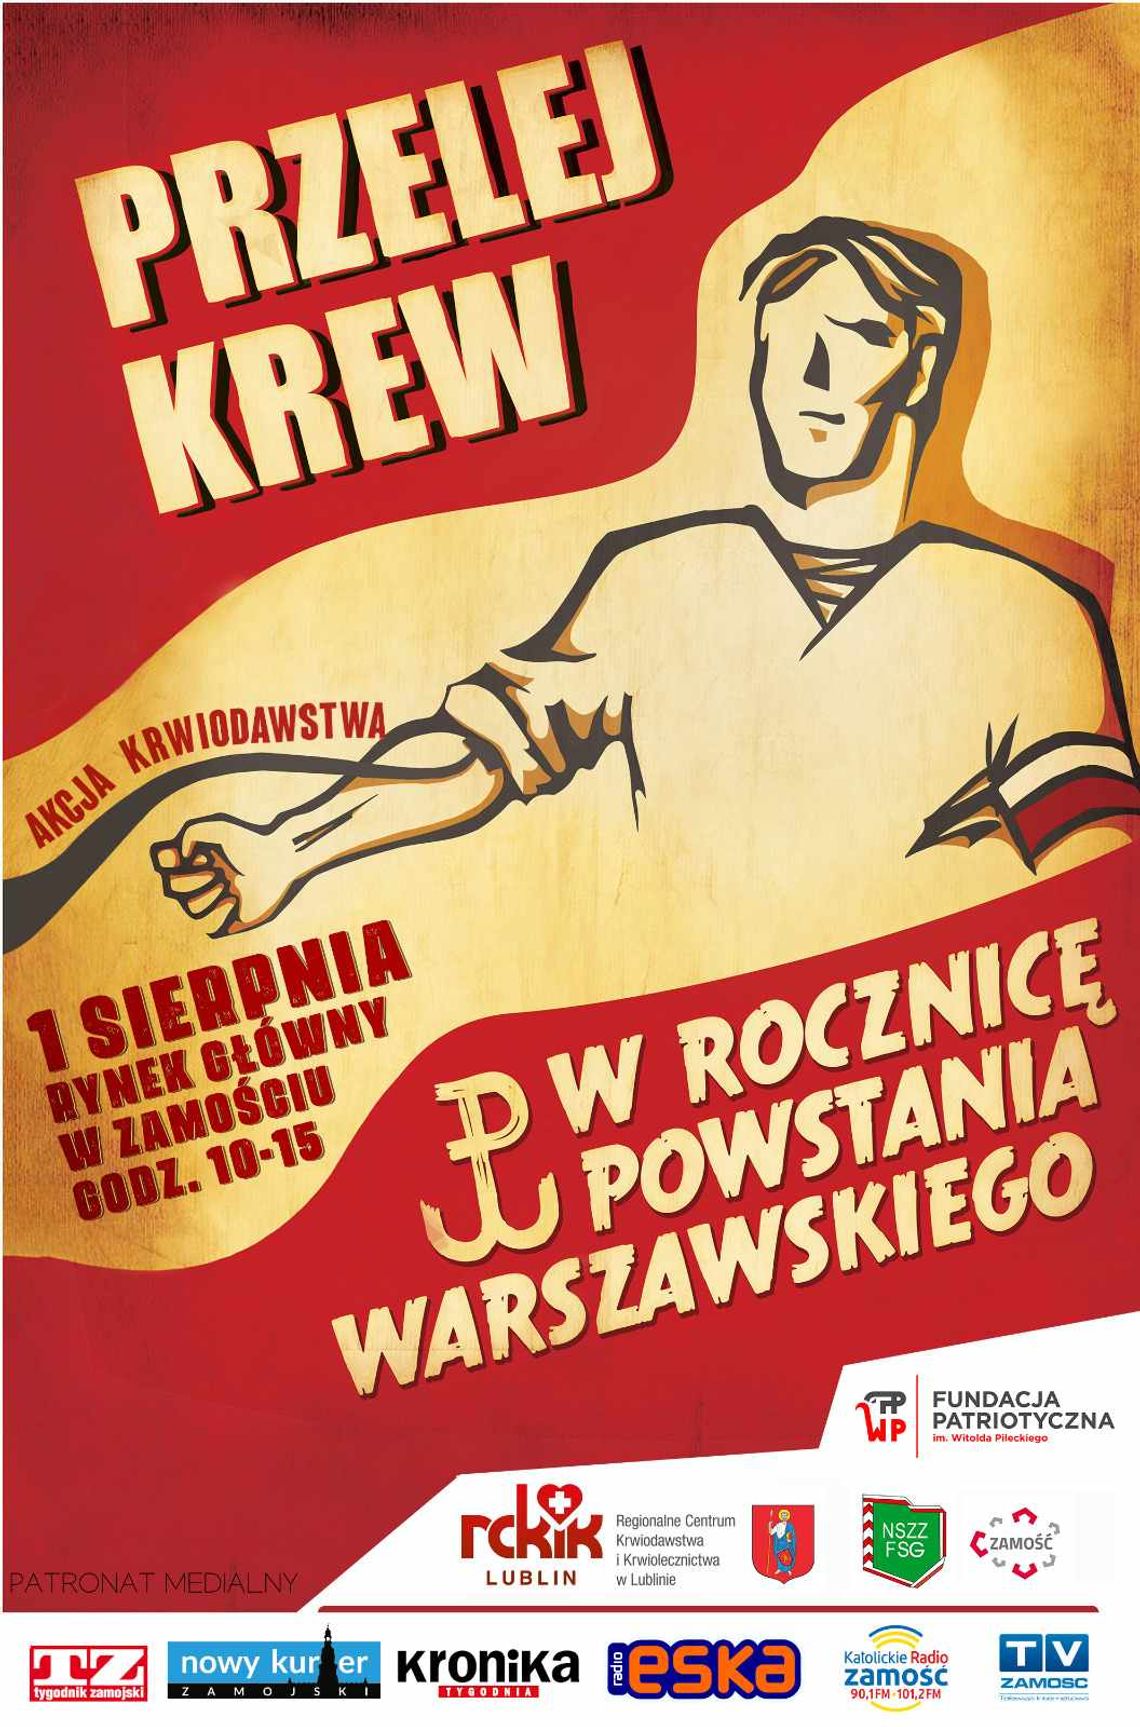 Plakat akcji "Przelej krew w rocznicę Powstania Warszawskiego".